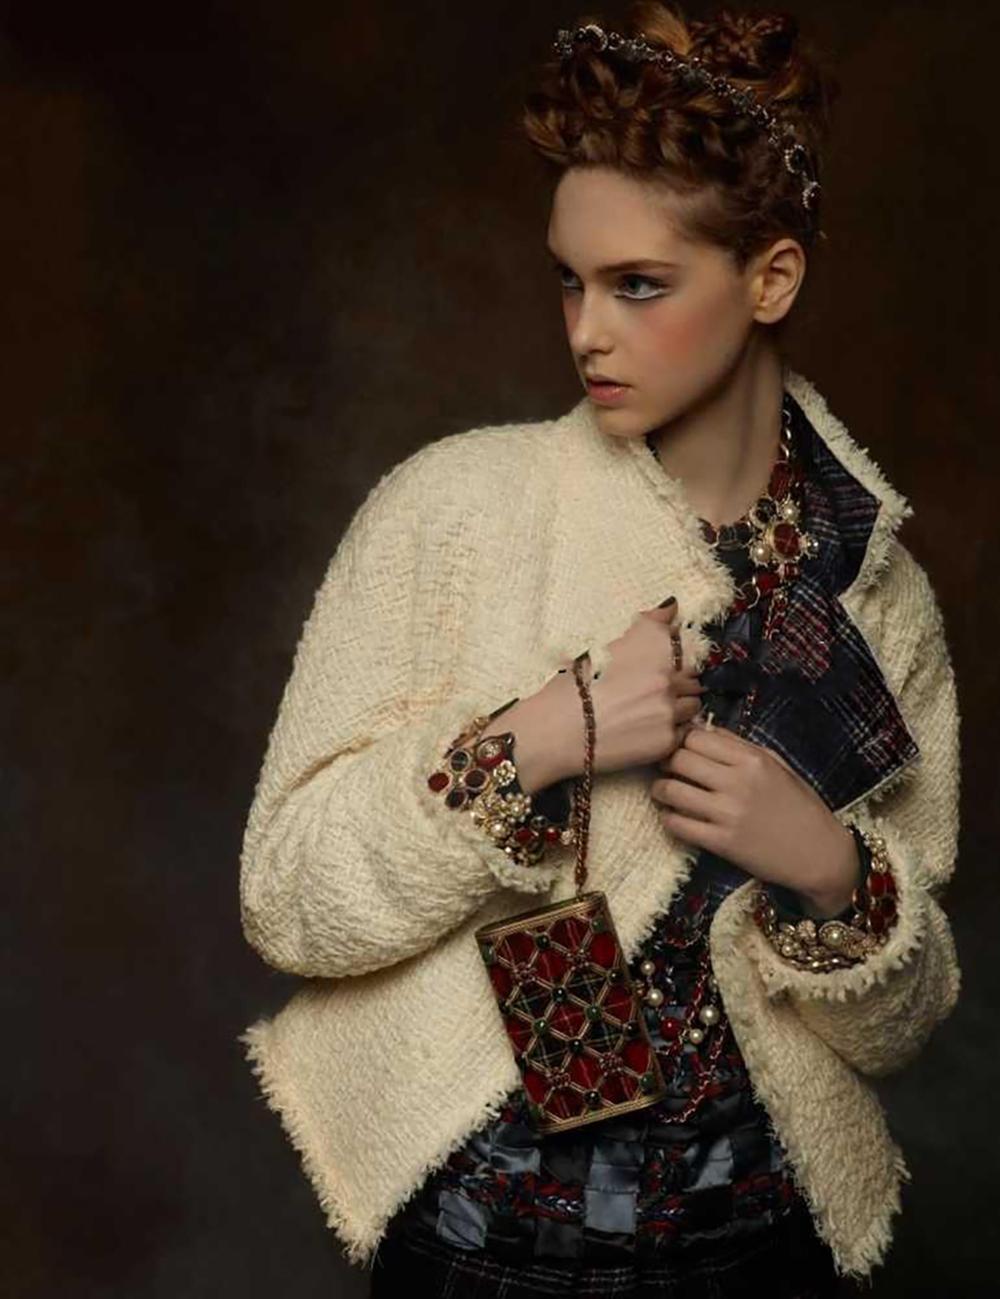 Veste en tweed Chanel la plus reconnaissable avec garniture en tartan de la collection Runway of Paris / EDINBURGH 2013 Pre-fall, 13a.
Comme on l'a vu sur les podiums, dans les campagnes publicitaires et dans de nombreux magazines !
Marque de taille